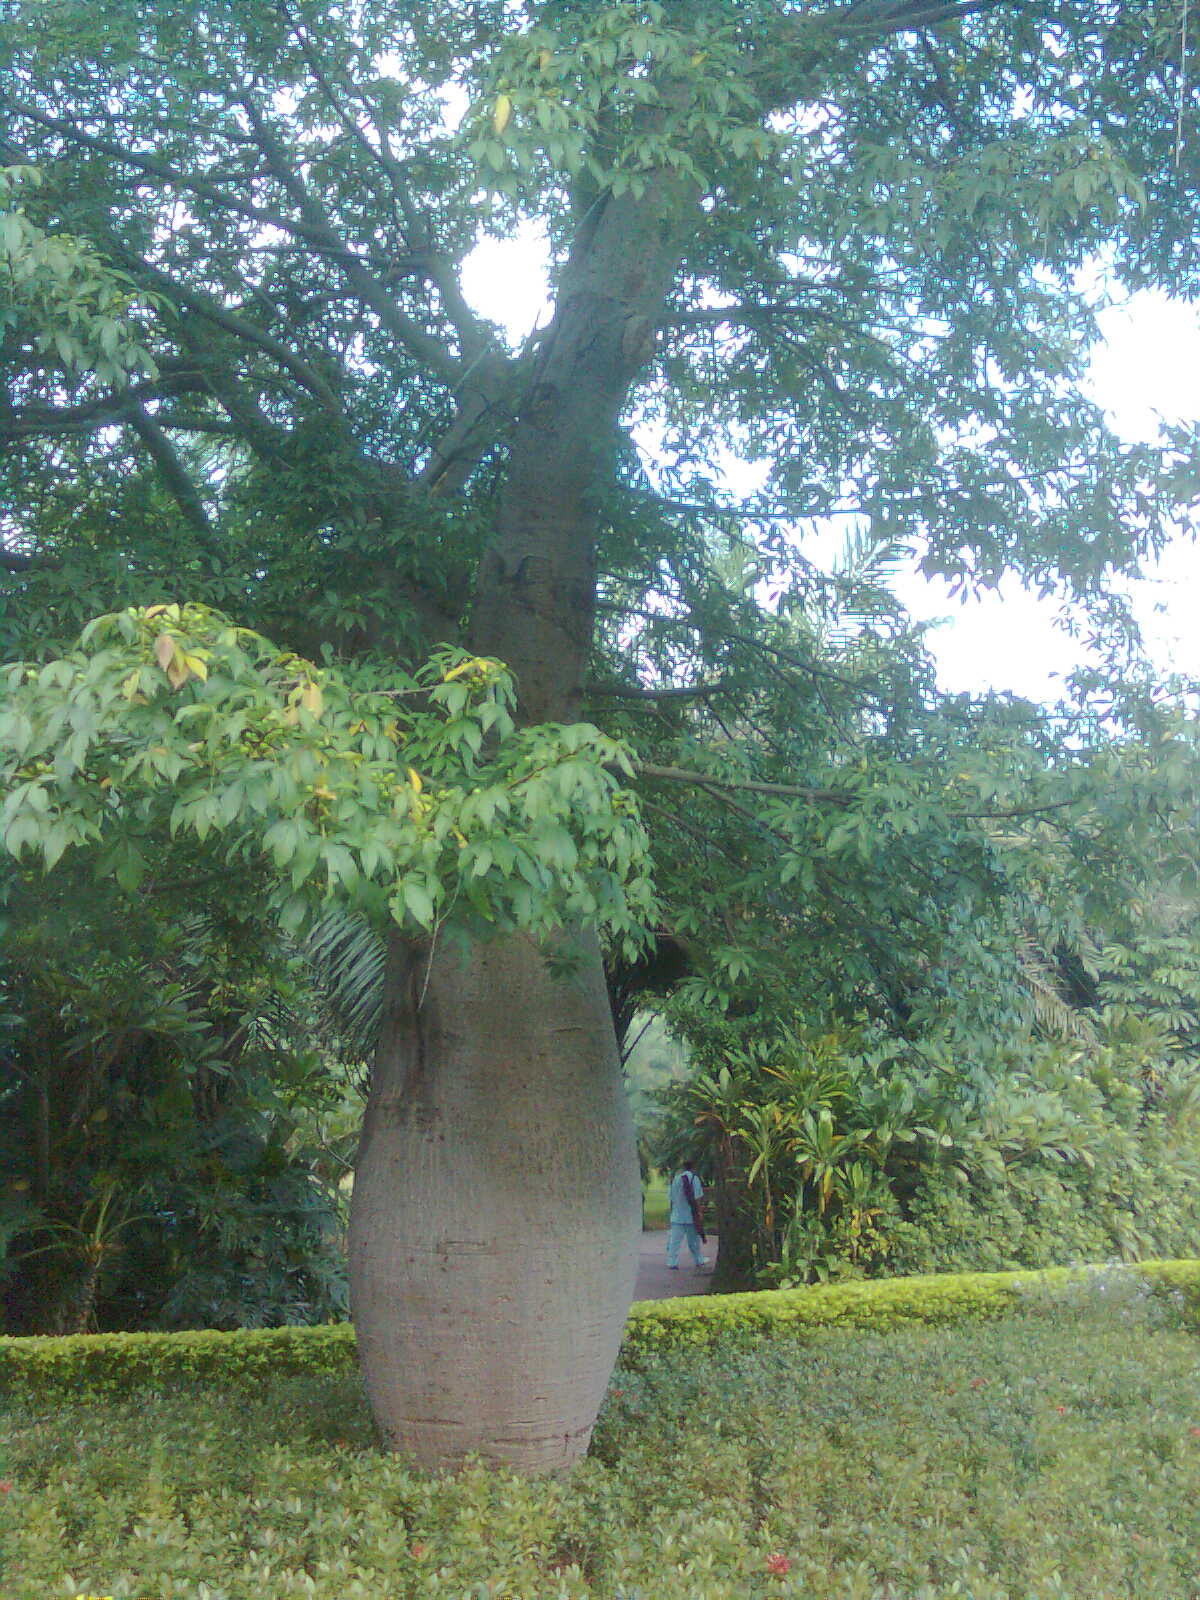 出公园时,看到这颗不知名的树,造型很美哈